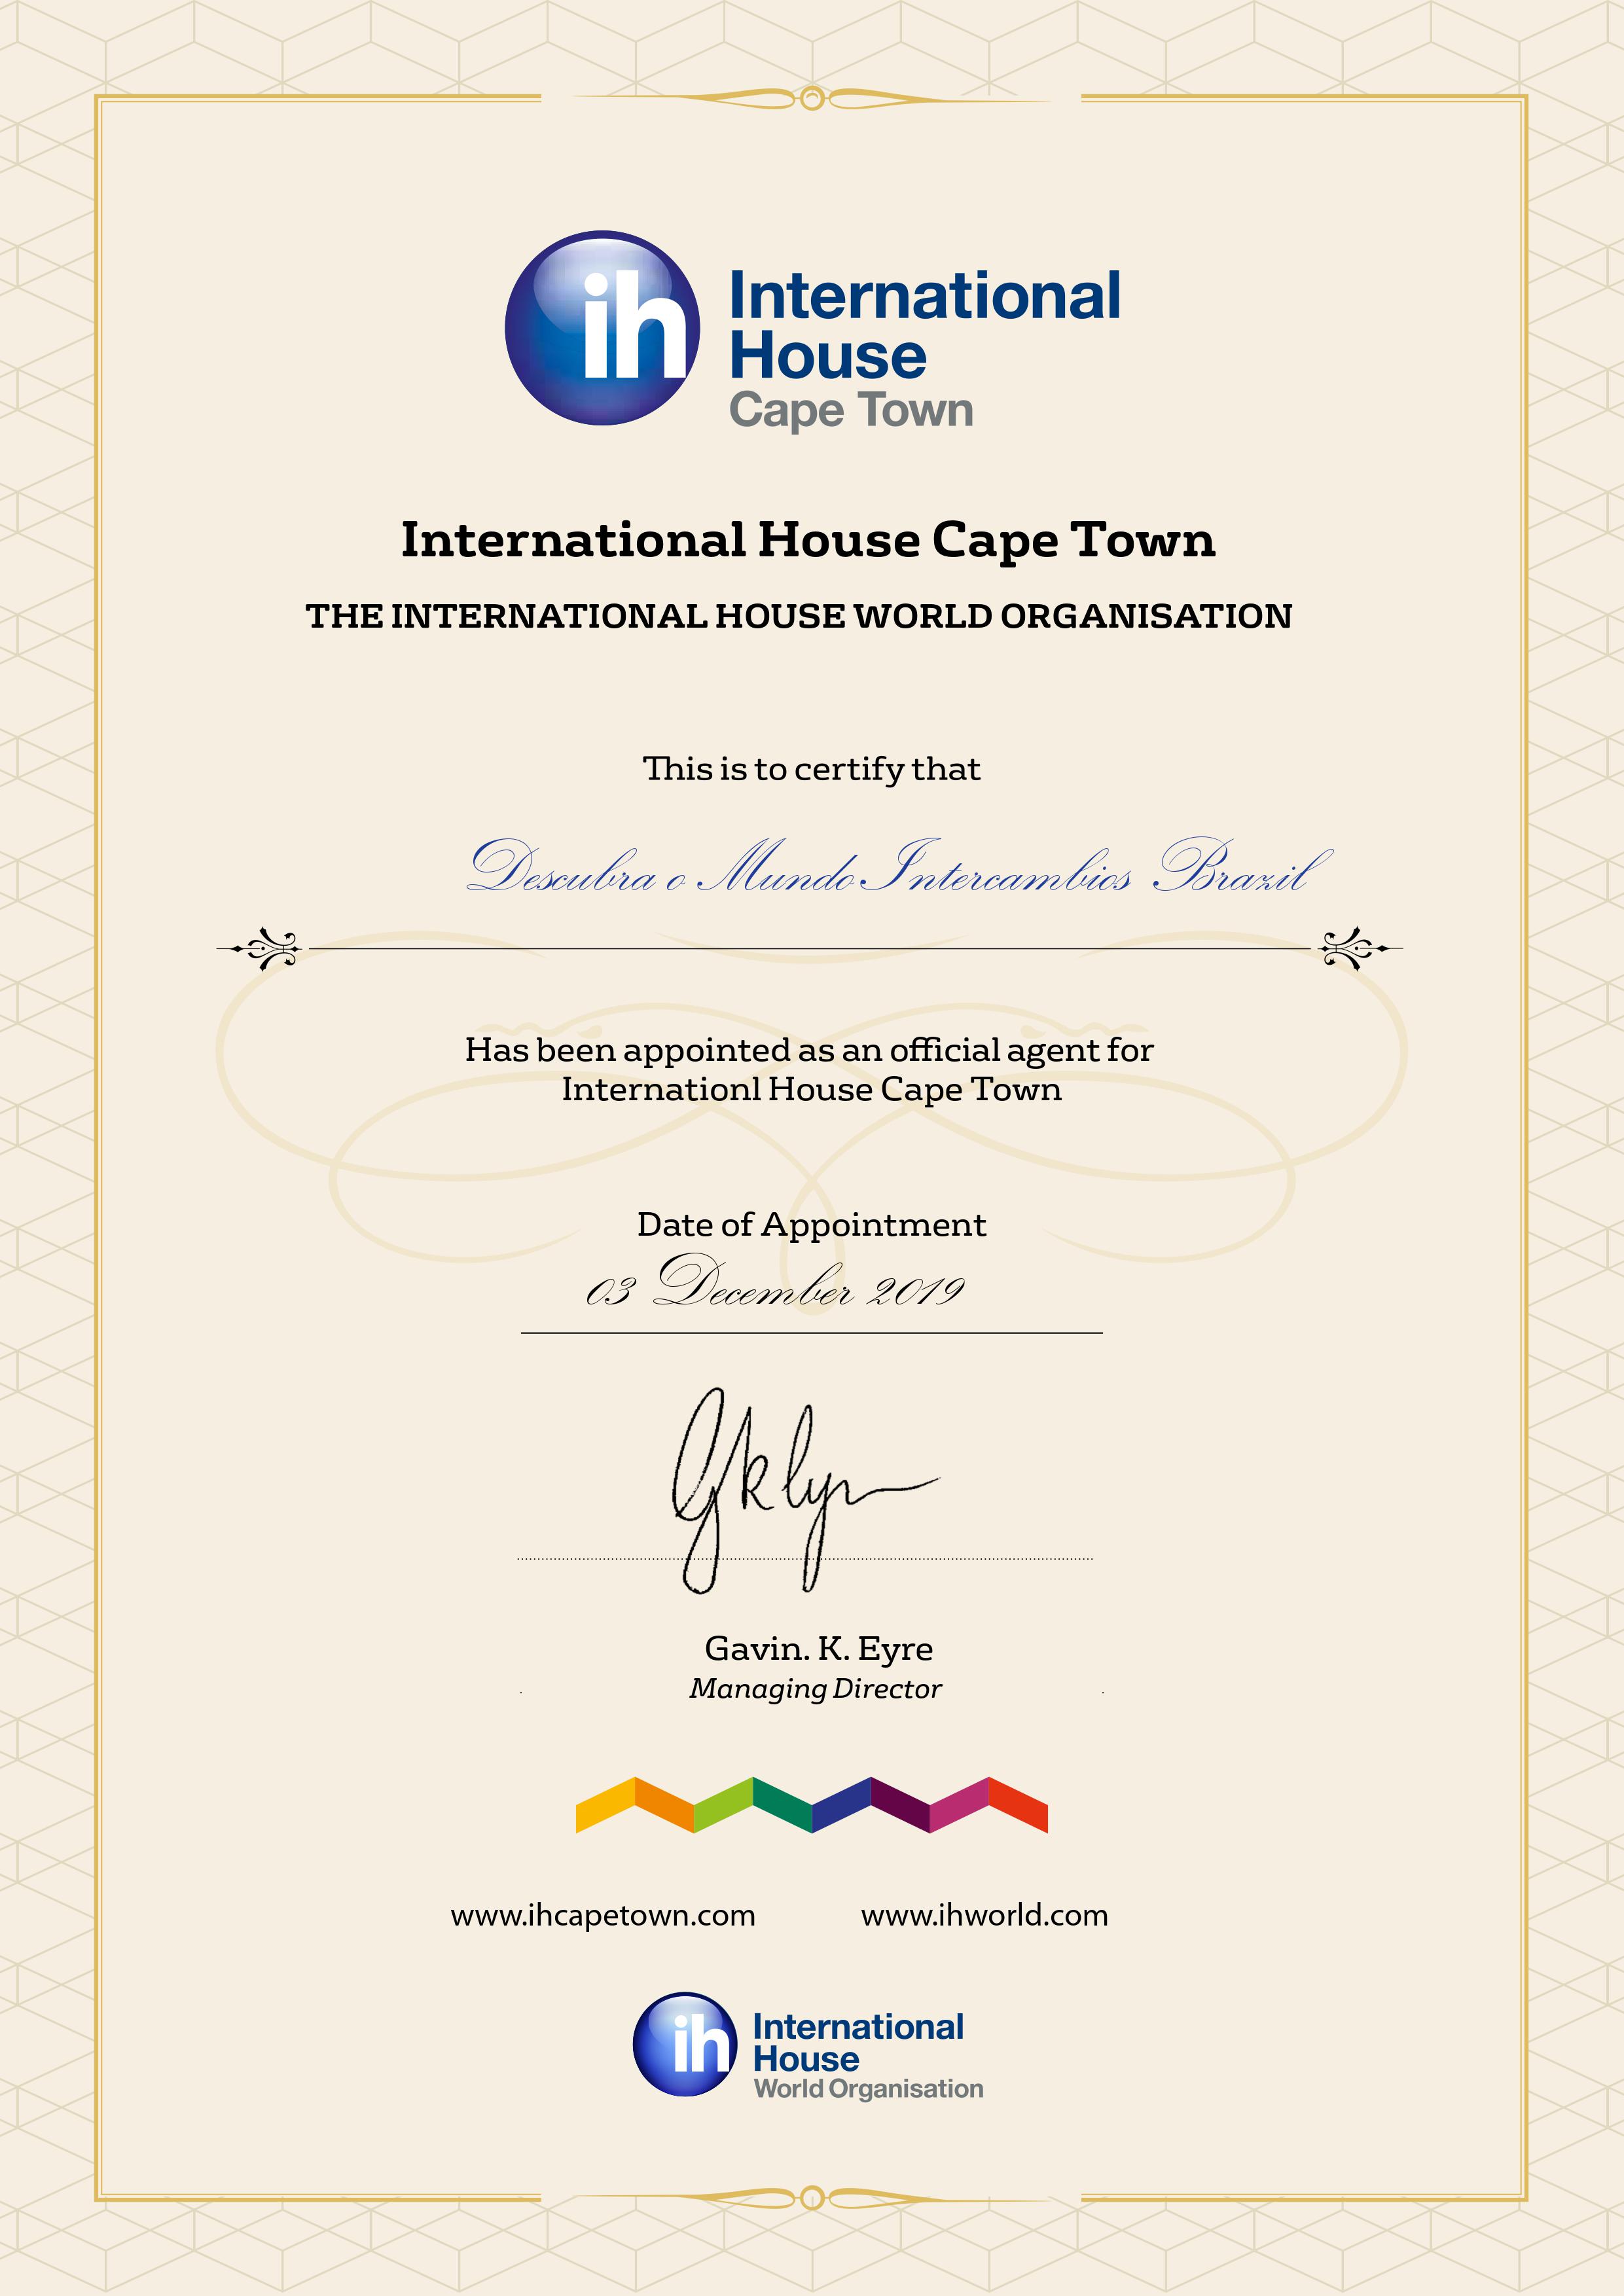 Descubra o Mundo é um agente autorizado da International House Cidade do Cabo